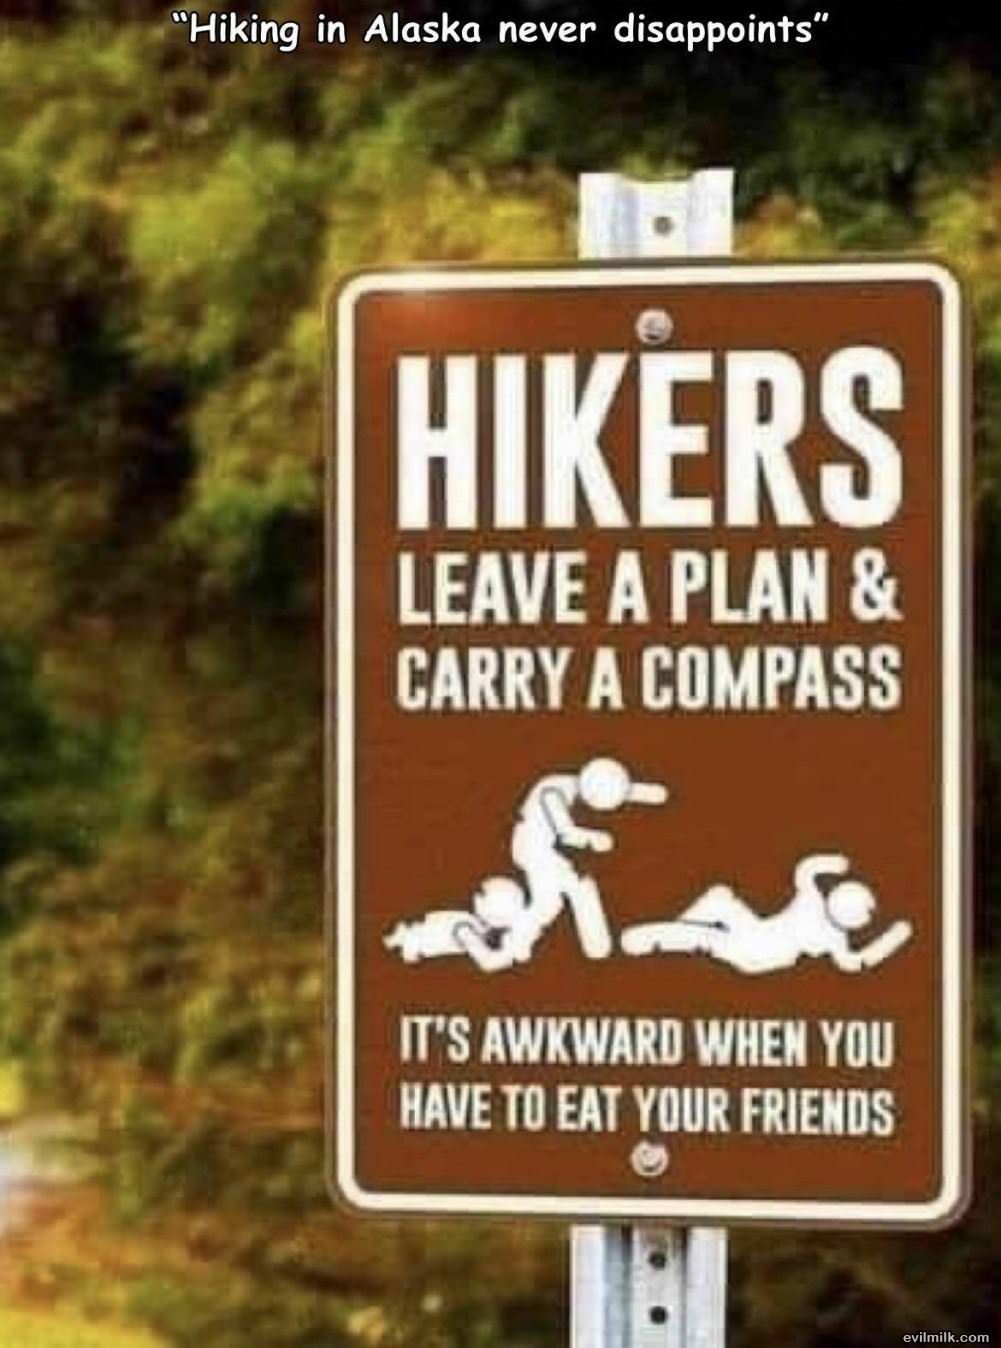 Hikers Please